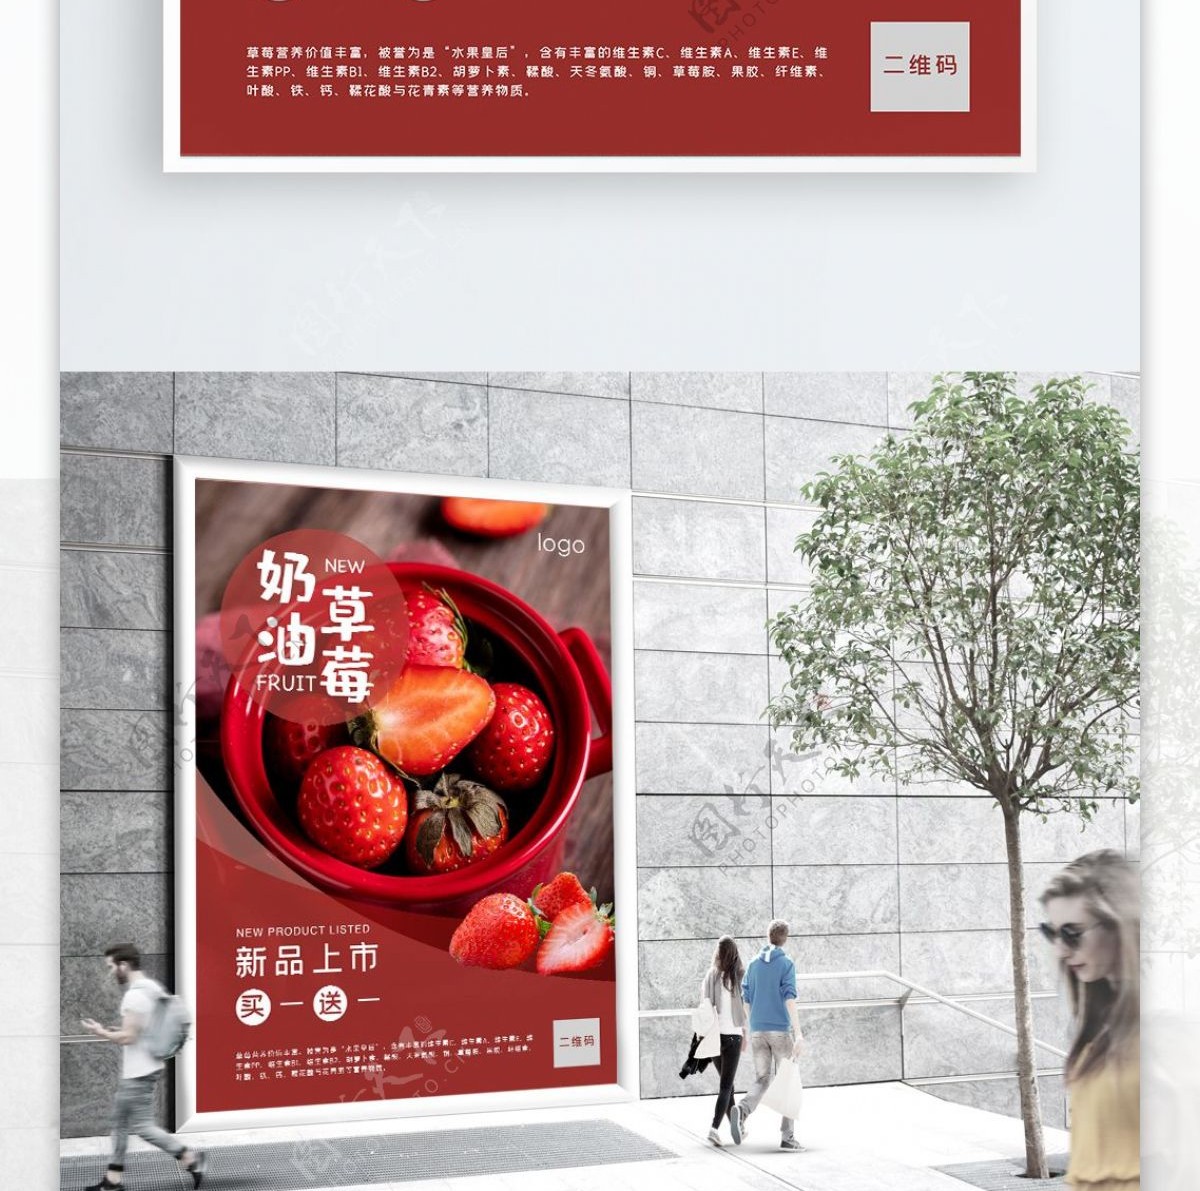 红色简约大气草莓宣传海报